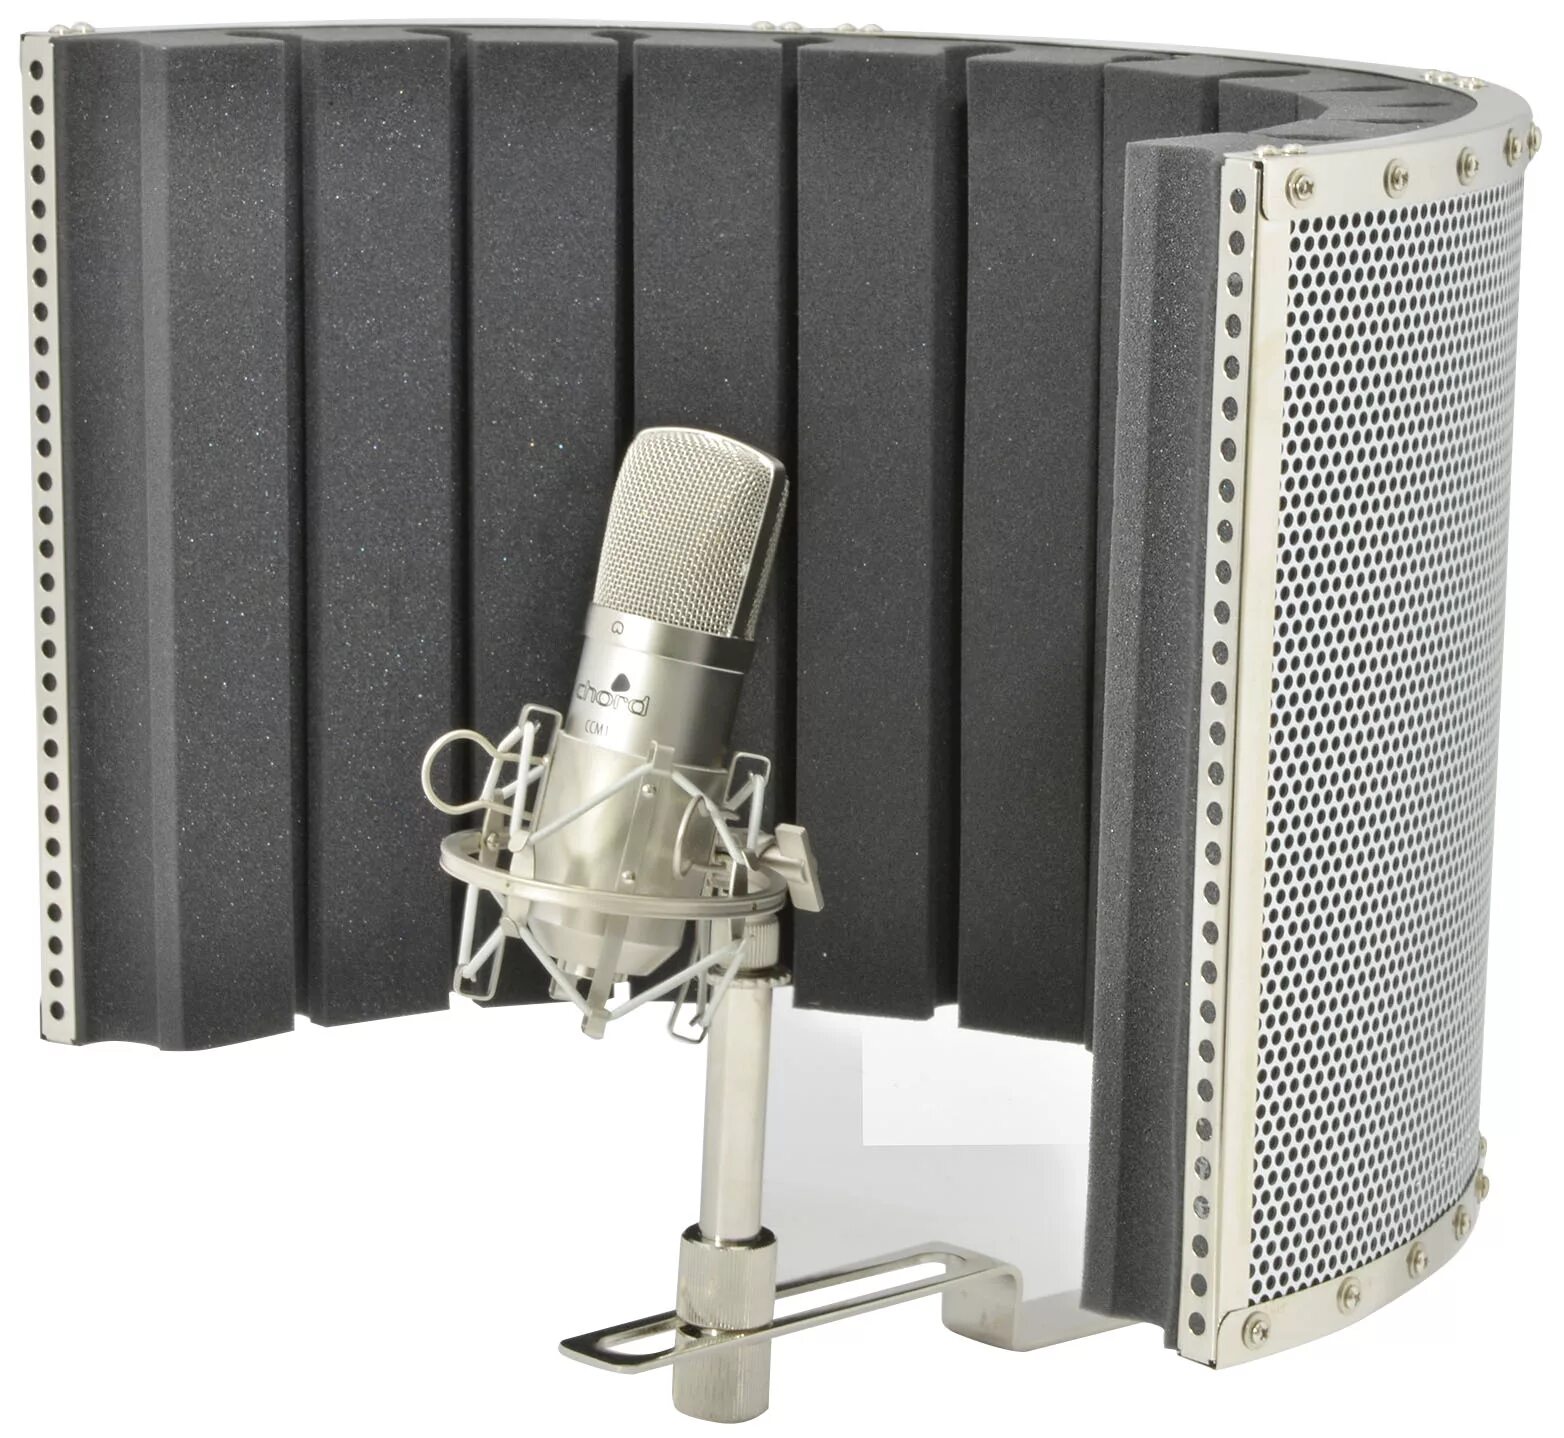 Звуковой экран. Звукопоглощающие панели для микрофона Rode. Экран для микрофона. Экран для записи вокала. Защитный акустический экран для микрофона.